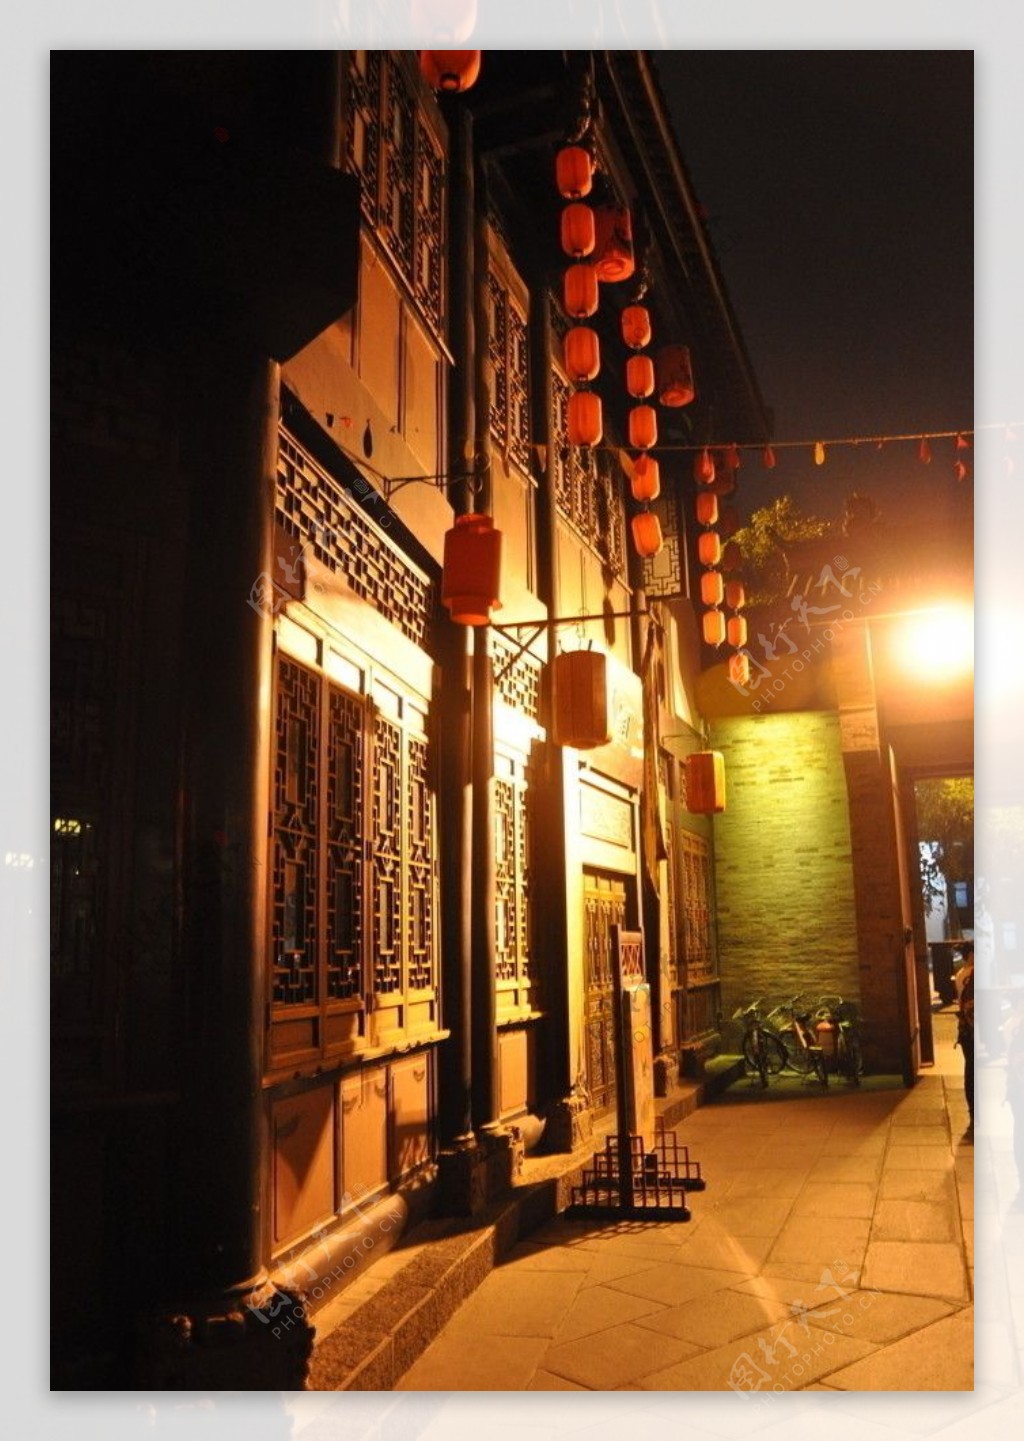 成都锦鲤风情街夜景图片